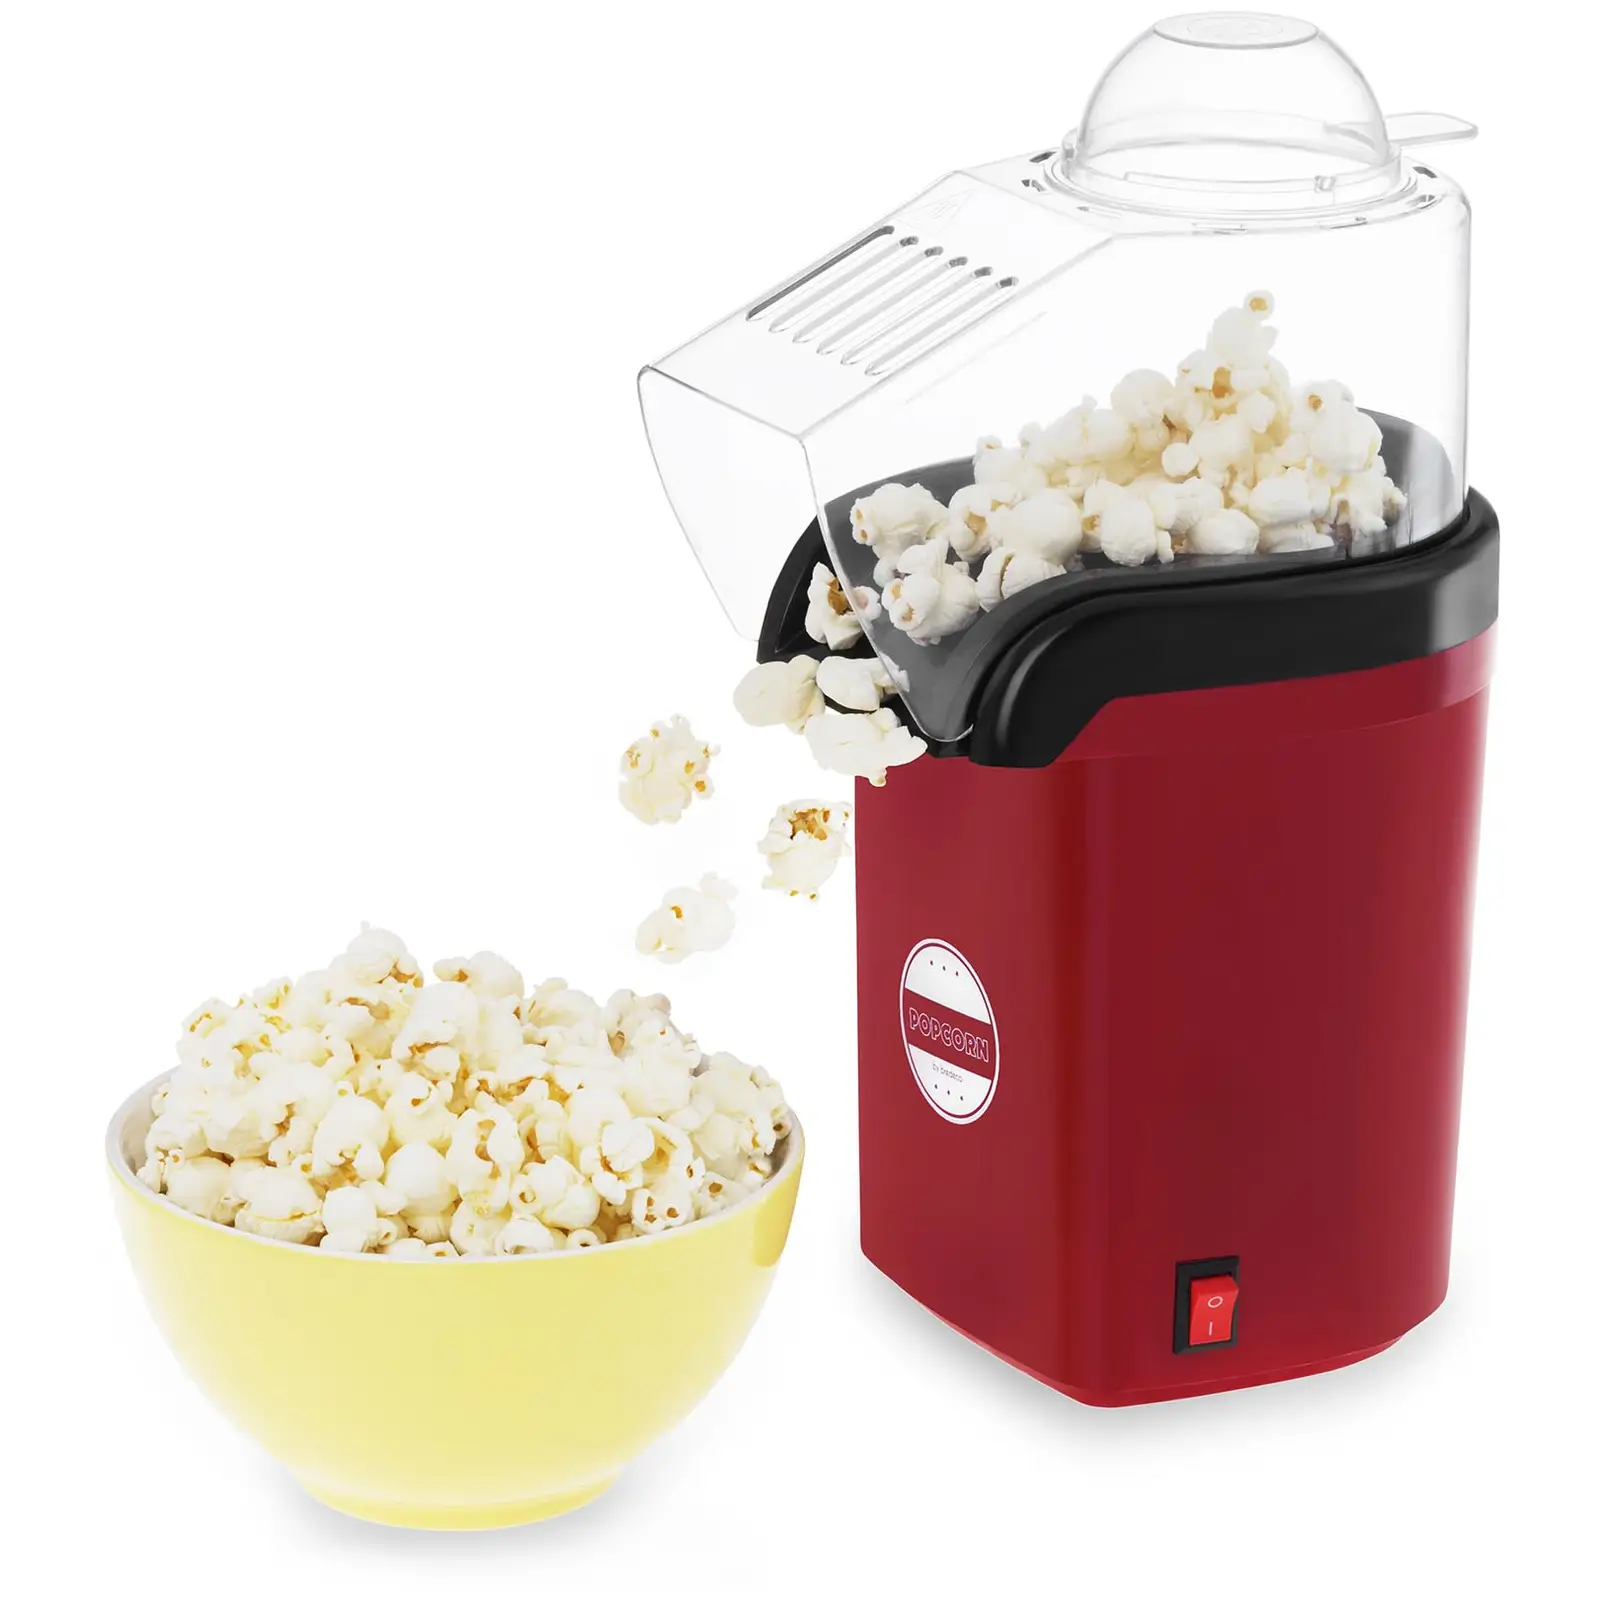 Horkovzdušný stroj na popcorn - červený